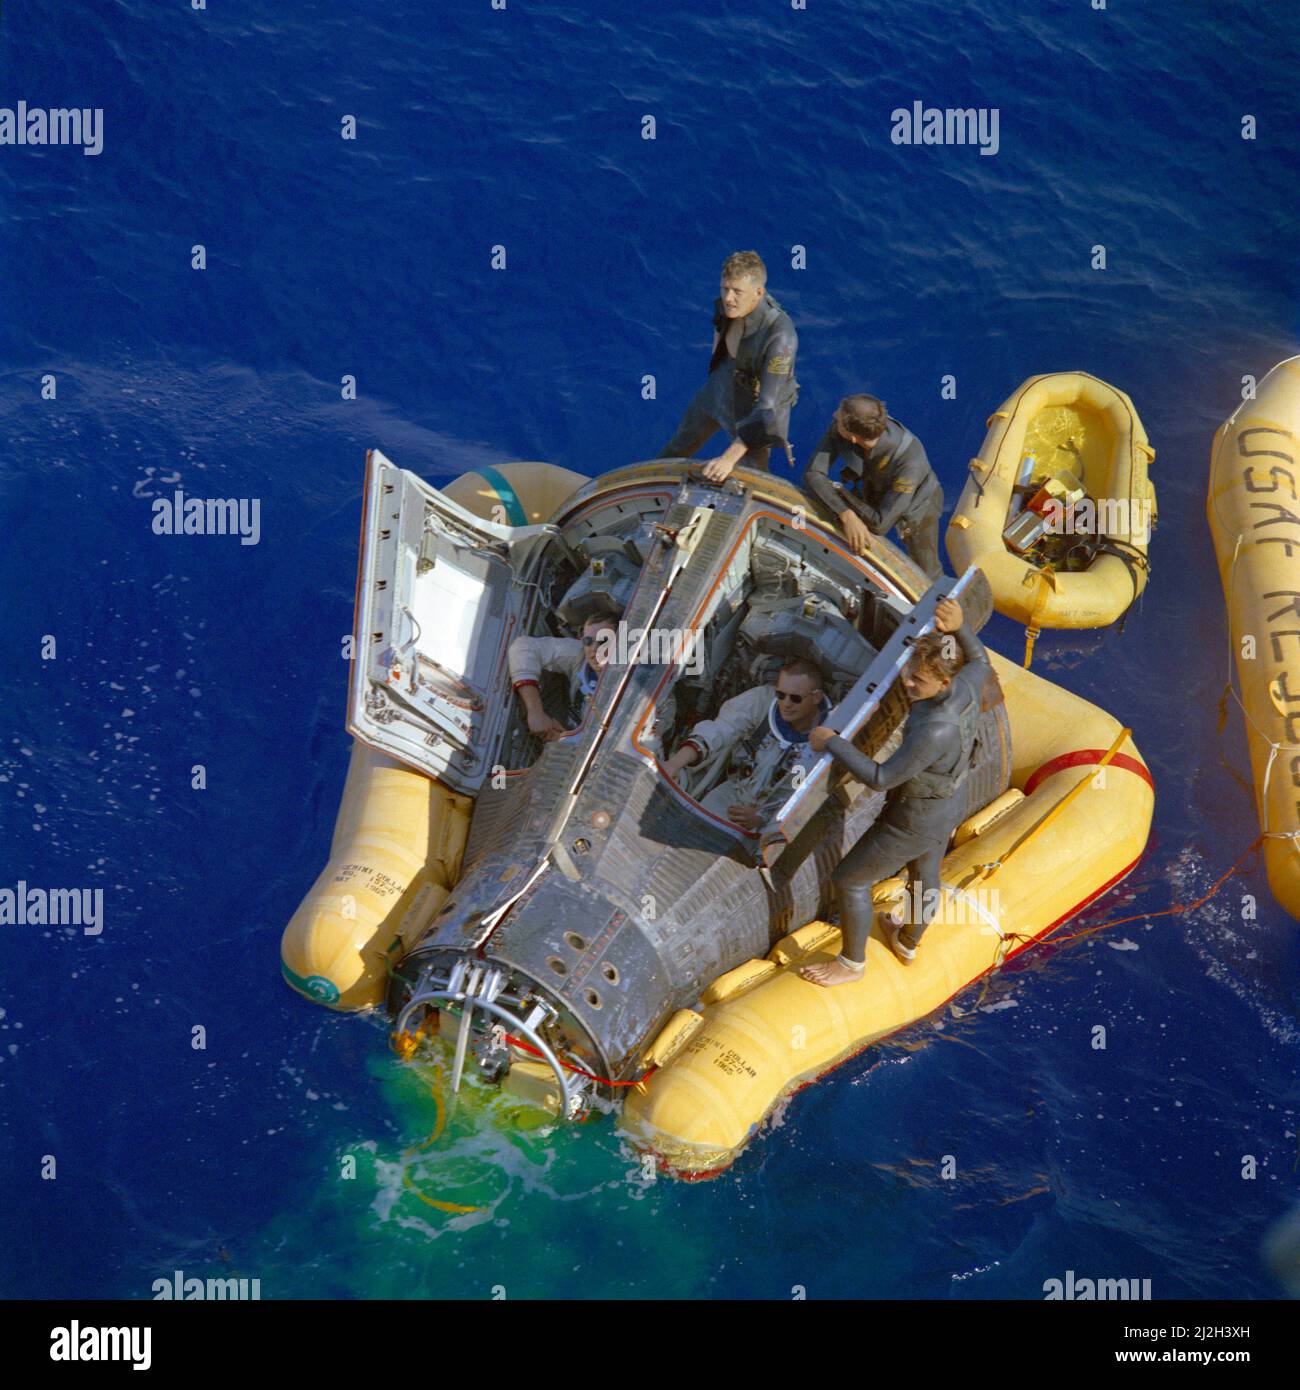 Die Astronauten Neil Armstrong (rechts) und David Scott (links) sitzen mit offenen Raumschiffluken und warten auf die Ankunft des Bergungsschiffs, der USS Leonard F. Mason, nach dem erfolgreichen Abschluss ihrer Gemini VIII-Mission. Sie werden von den Pararescuemen der US-Luftwaffe unterstützt, die zu ihrem Raumschiff sprangen. Stockfoto